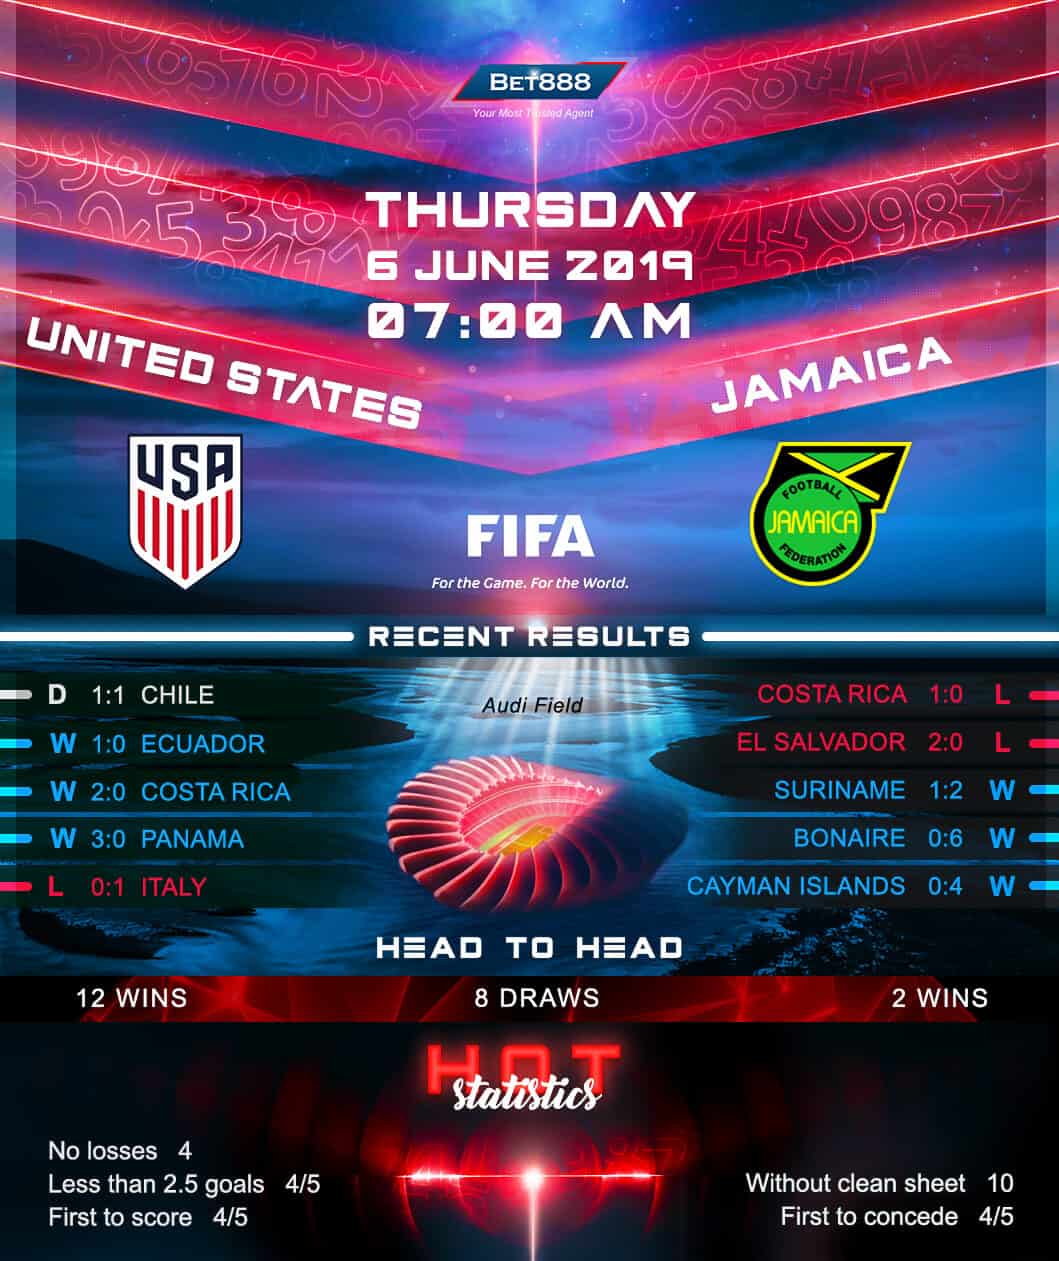 United States vs Jamaica﻿ 06/06/19